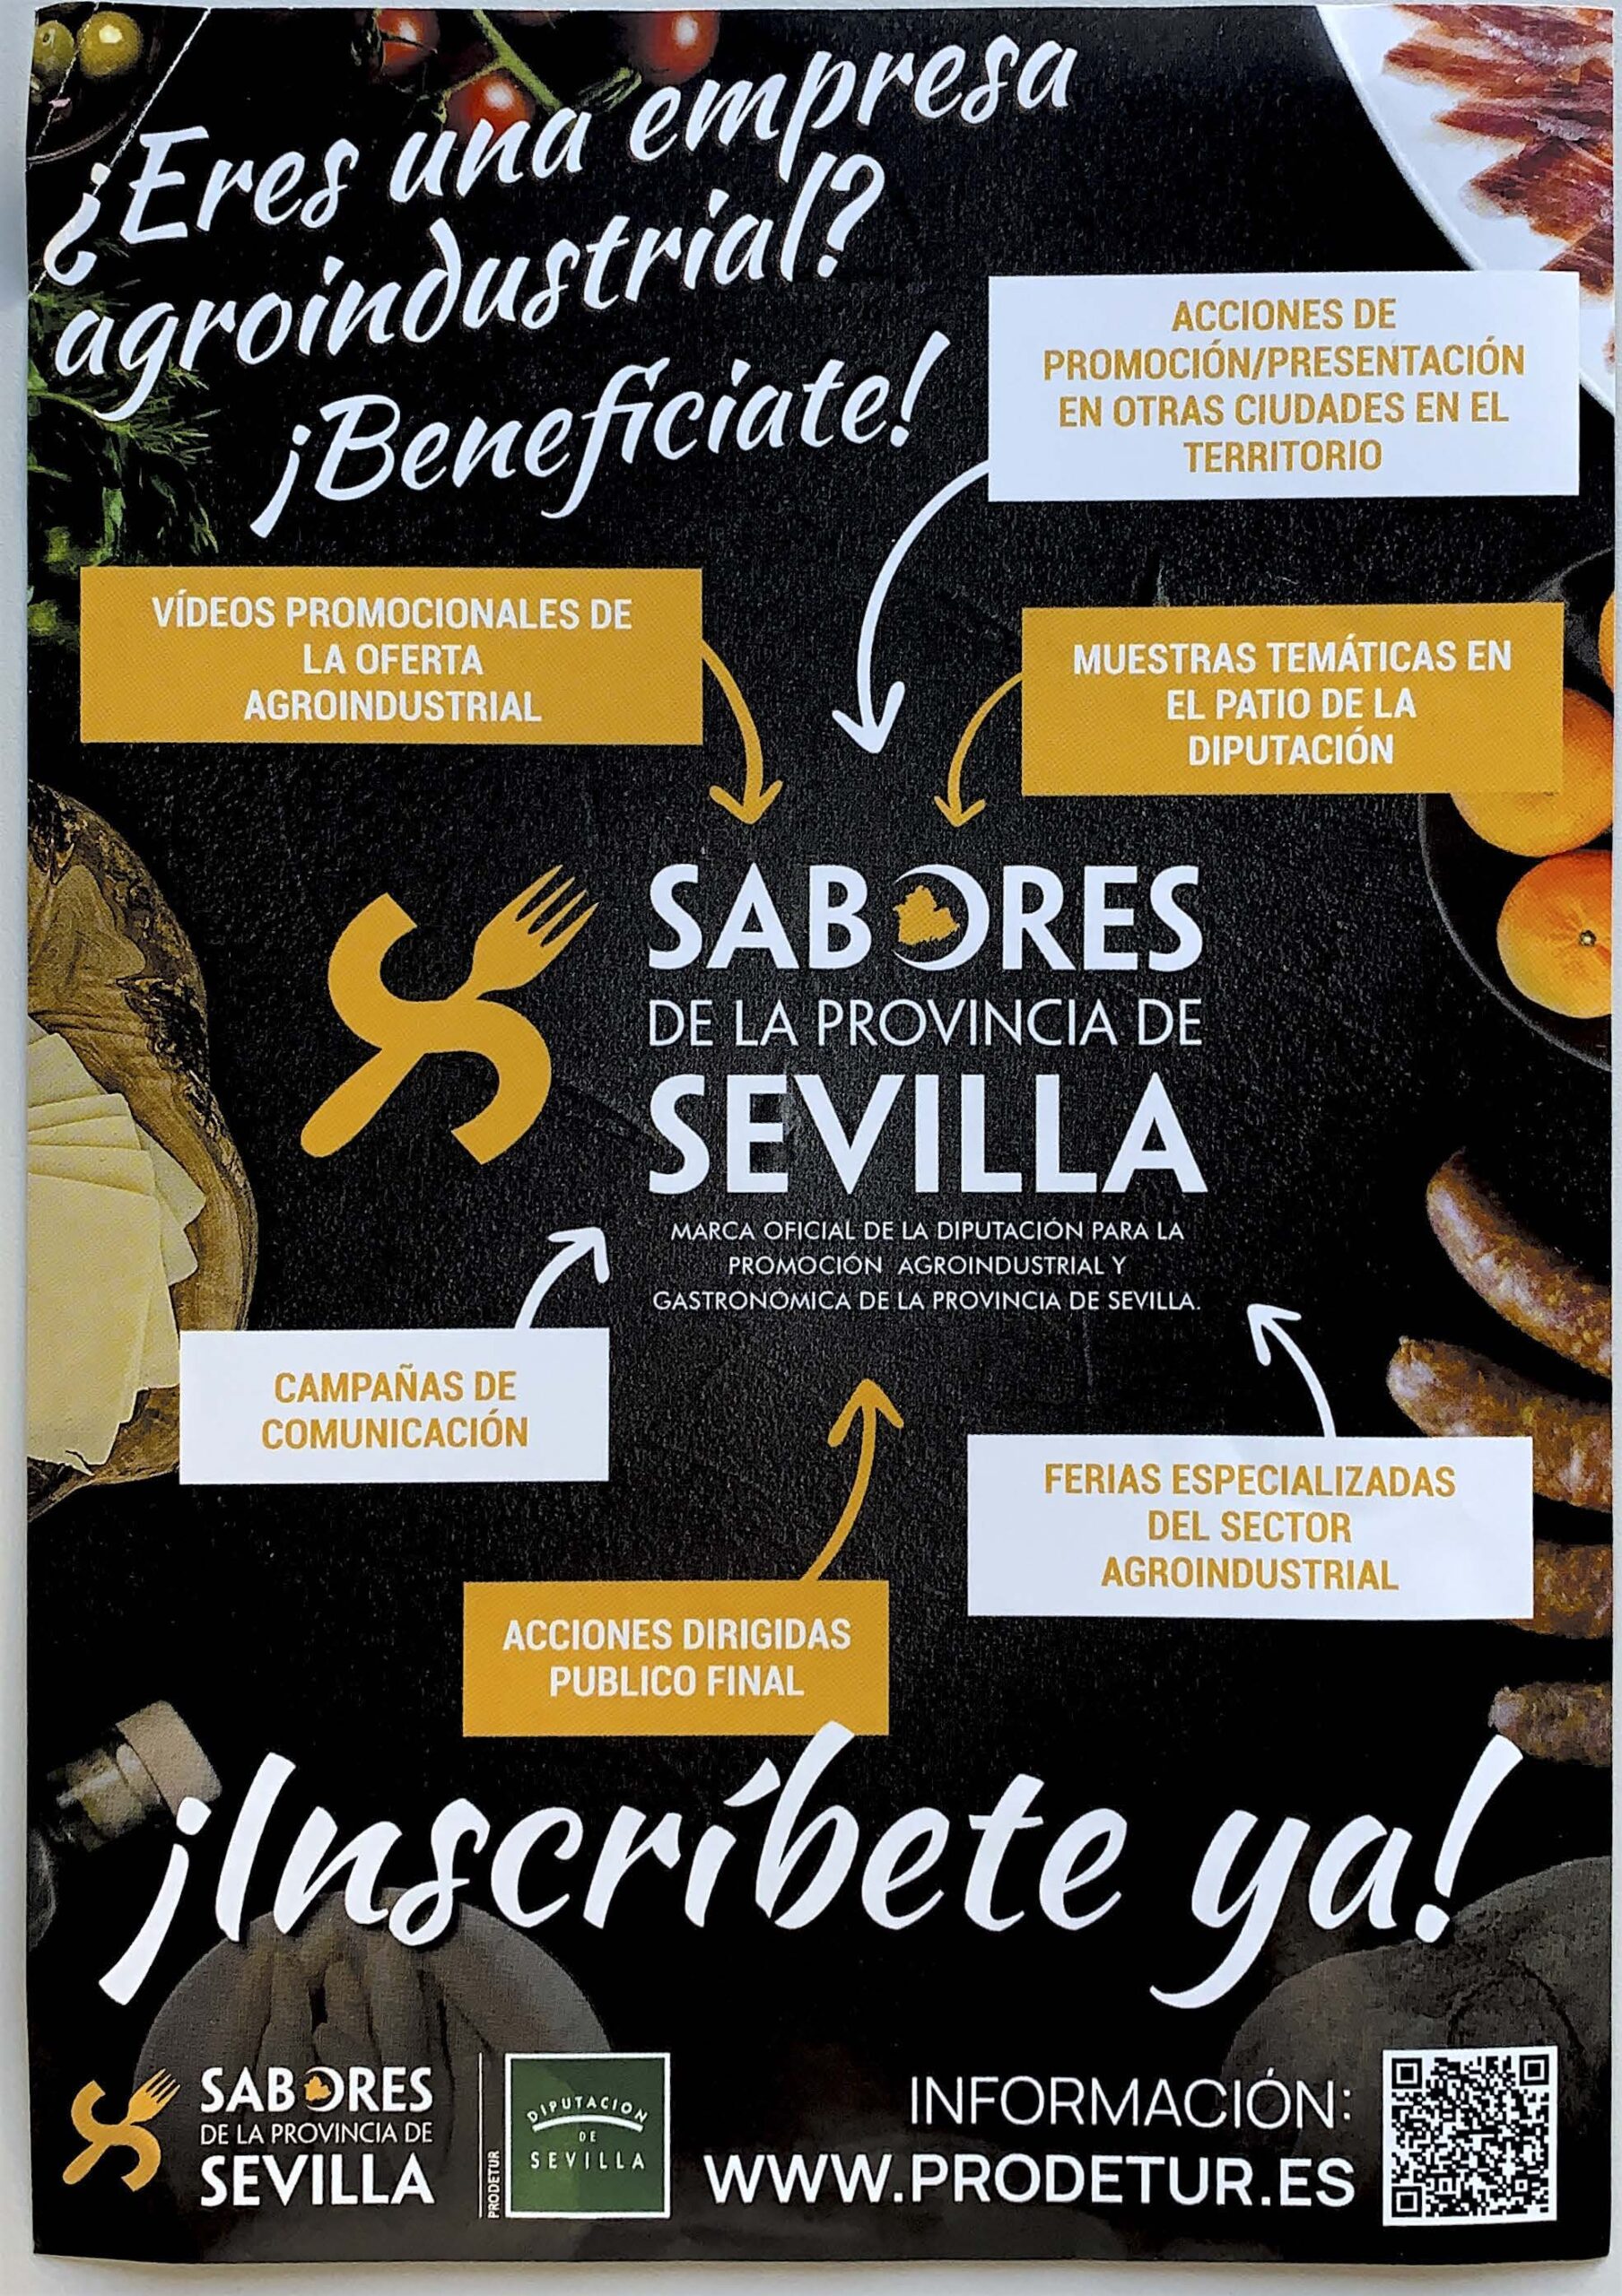 SABORES-DE-LA-PROVINCIA-DE-SEVILLA-1-scaled